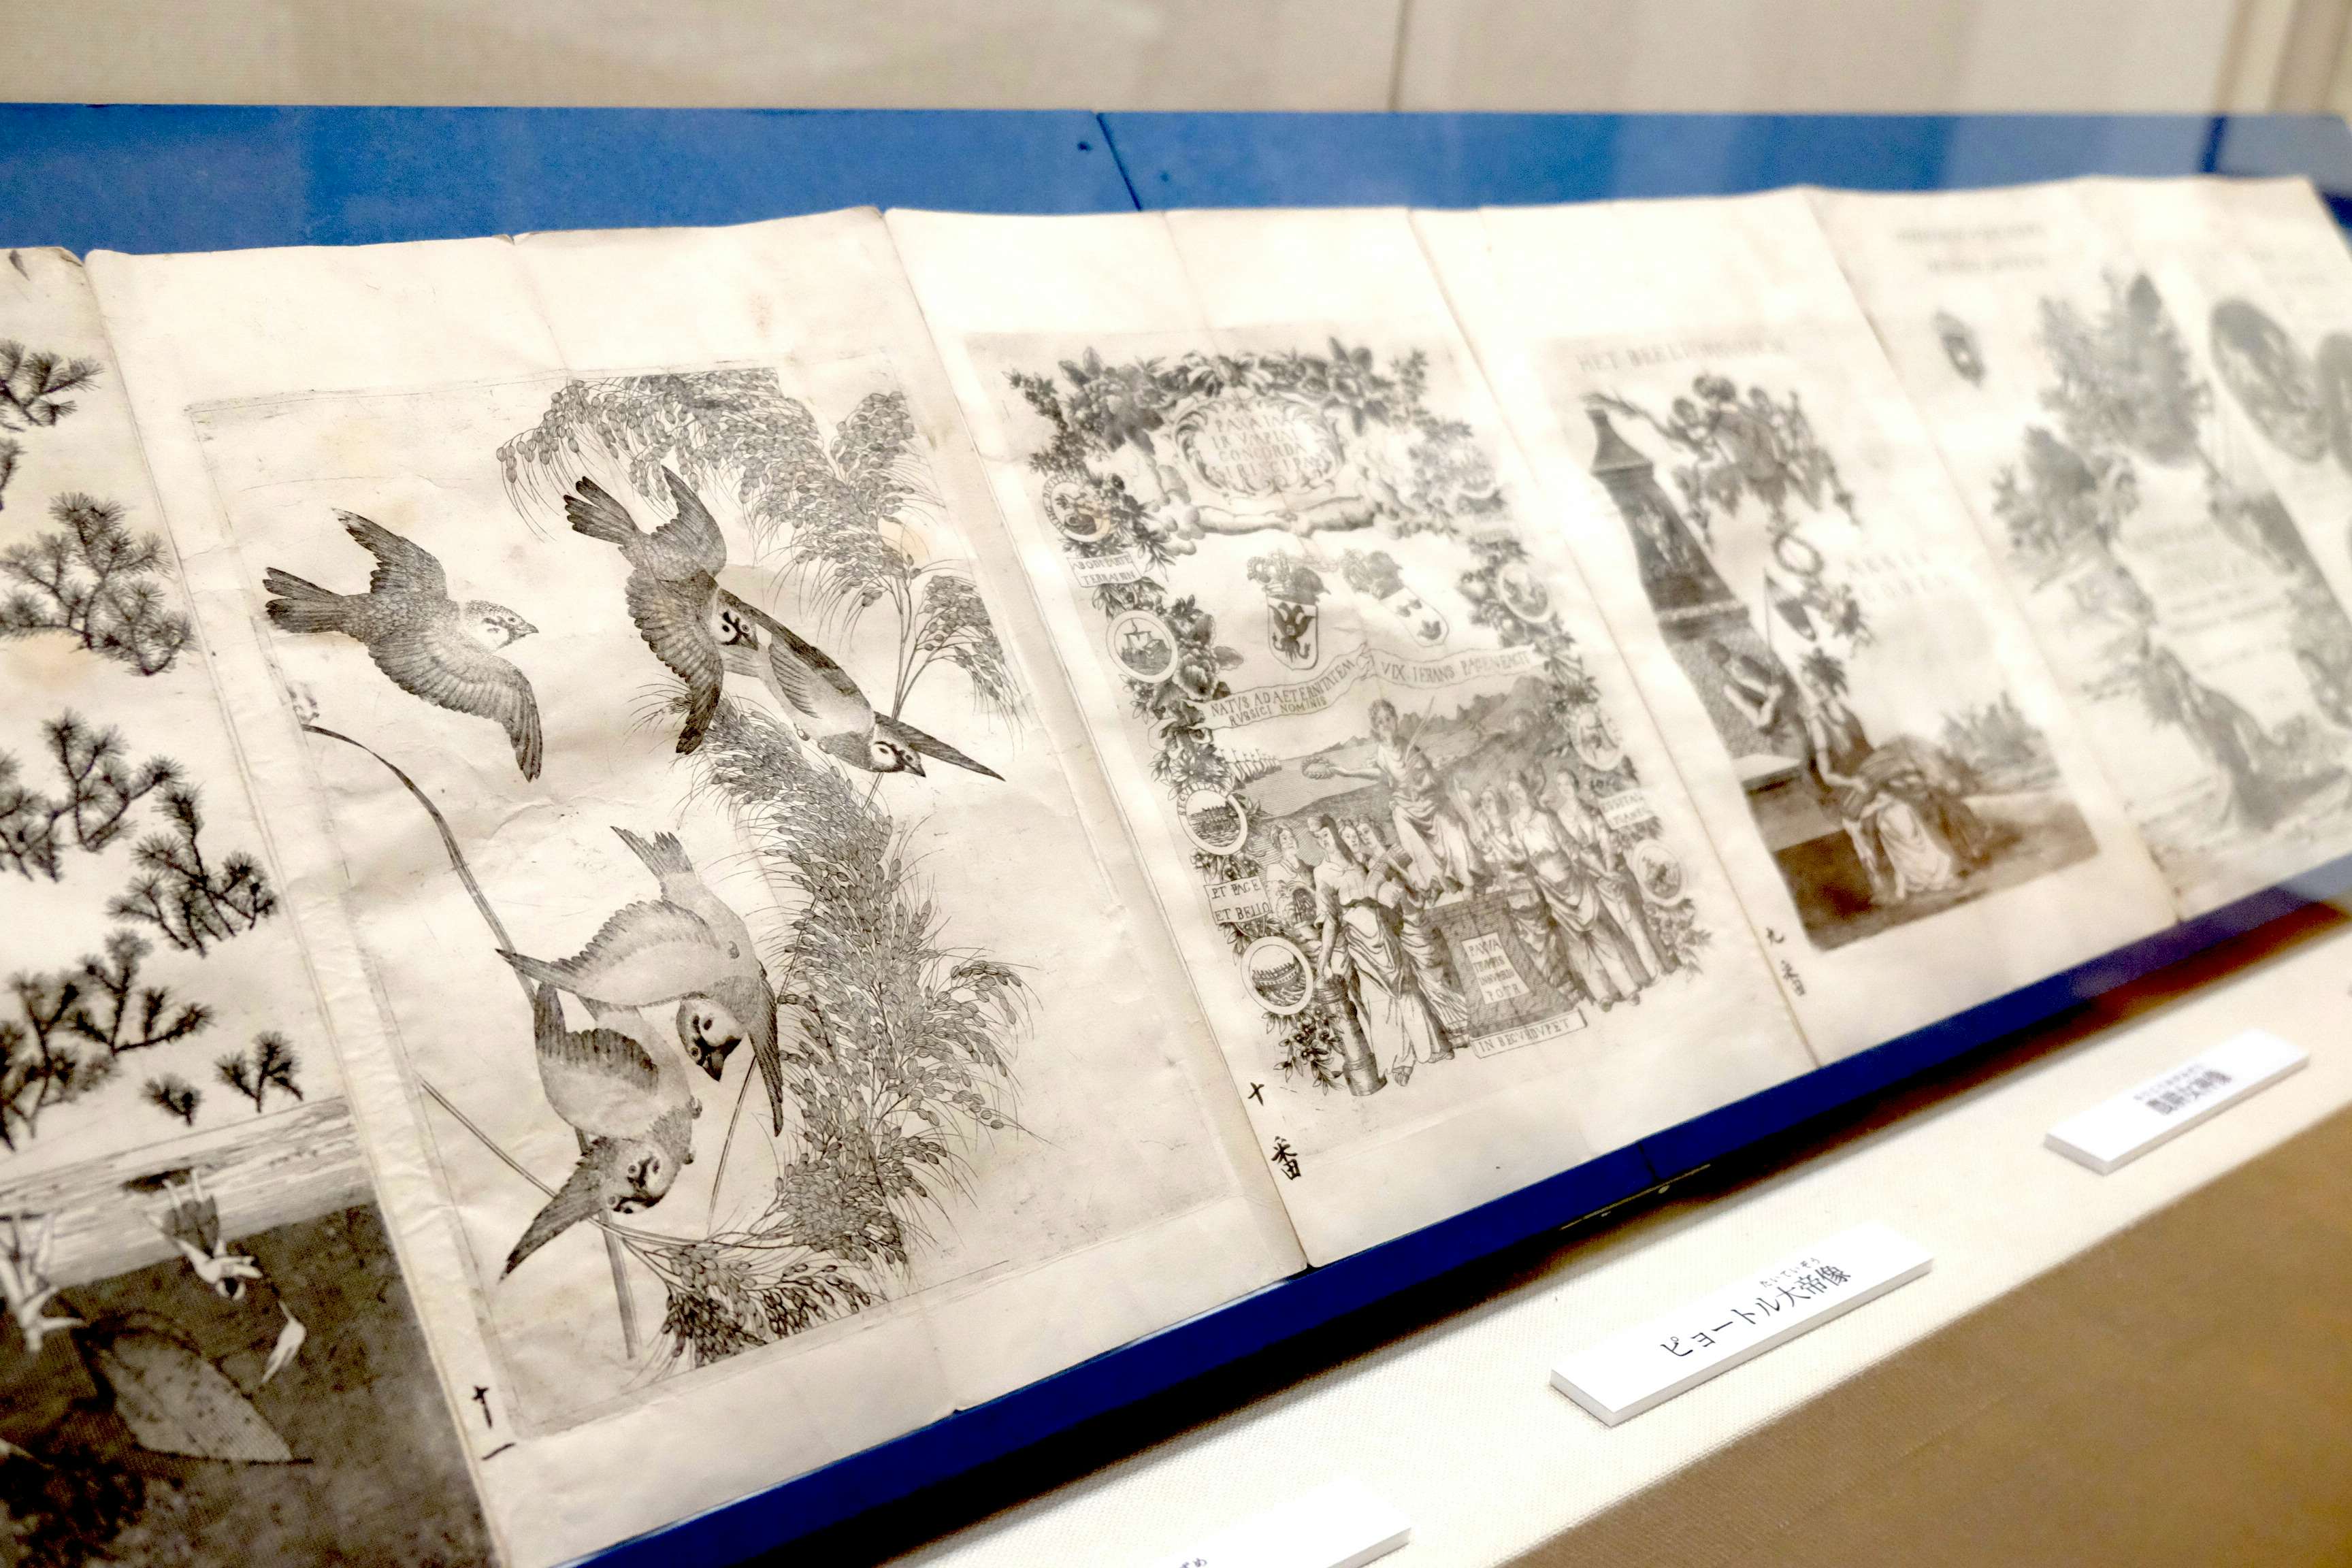 技術の粋を美術として見る。江戸の洋風画の大家・亜欧堂田善の回顧展が